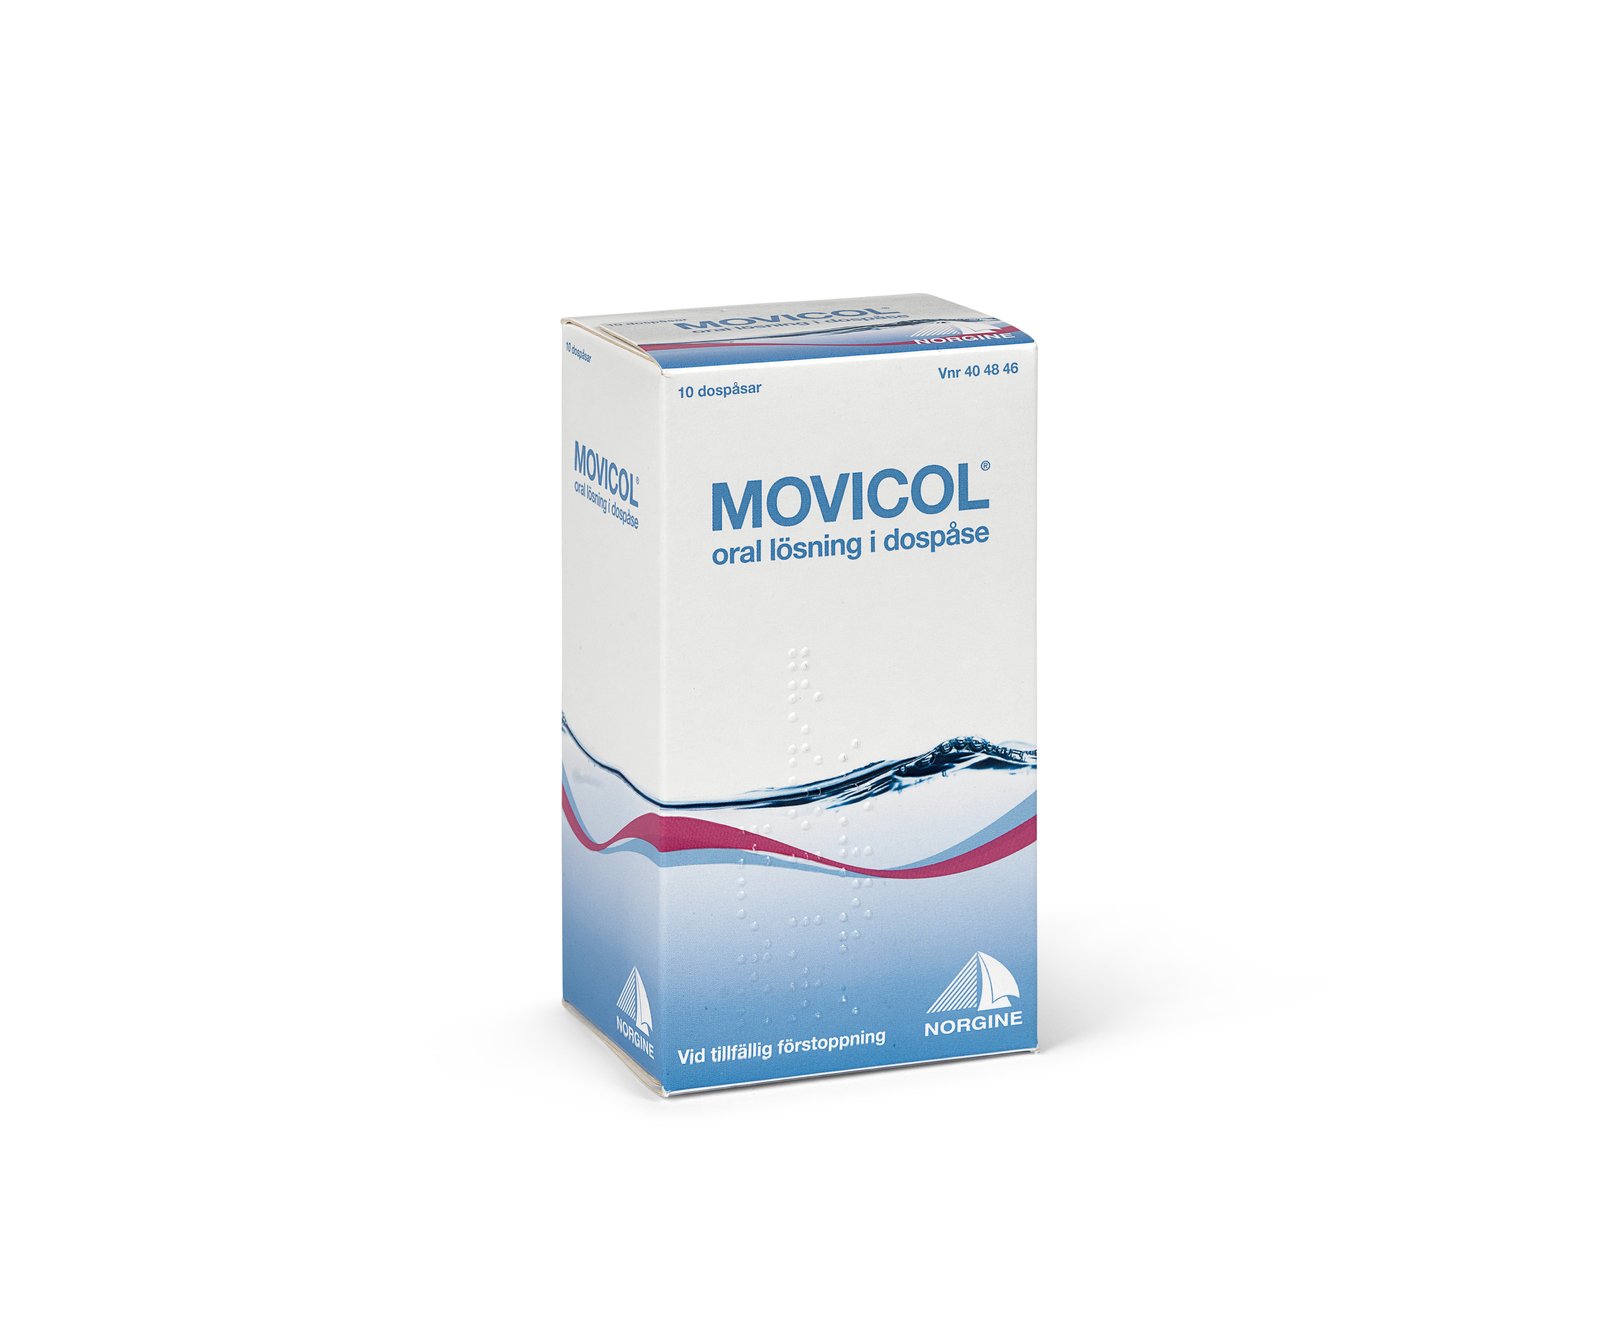 Movicol Vid Tillfällig Förstoppning Oral Lösning 10 dospåsar